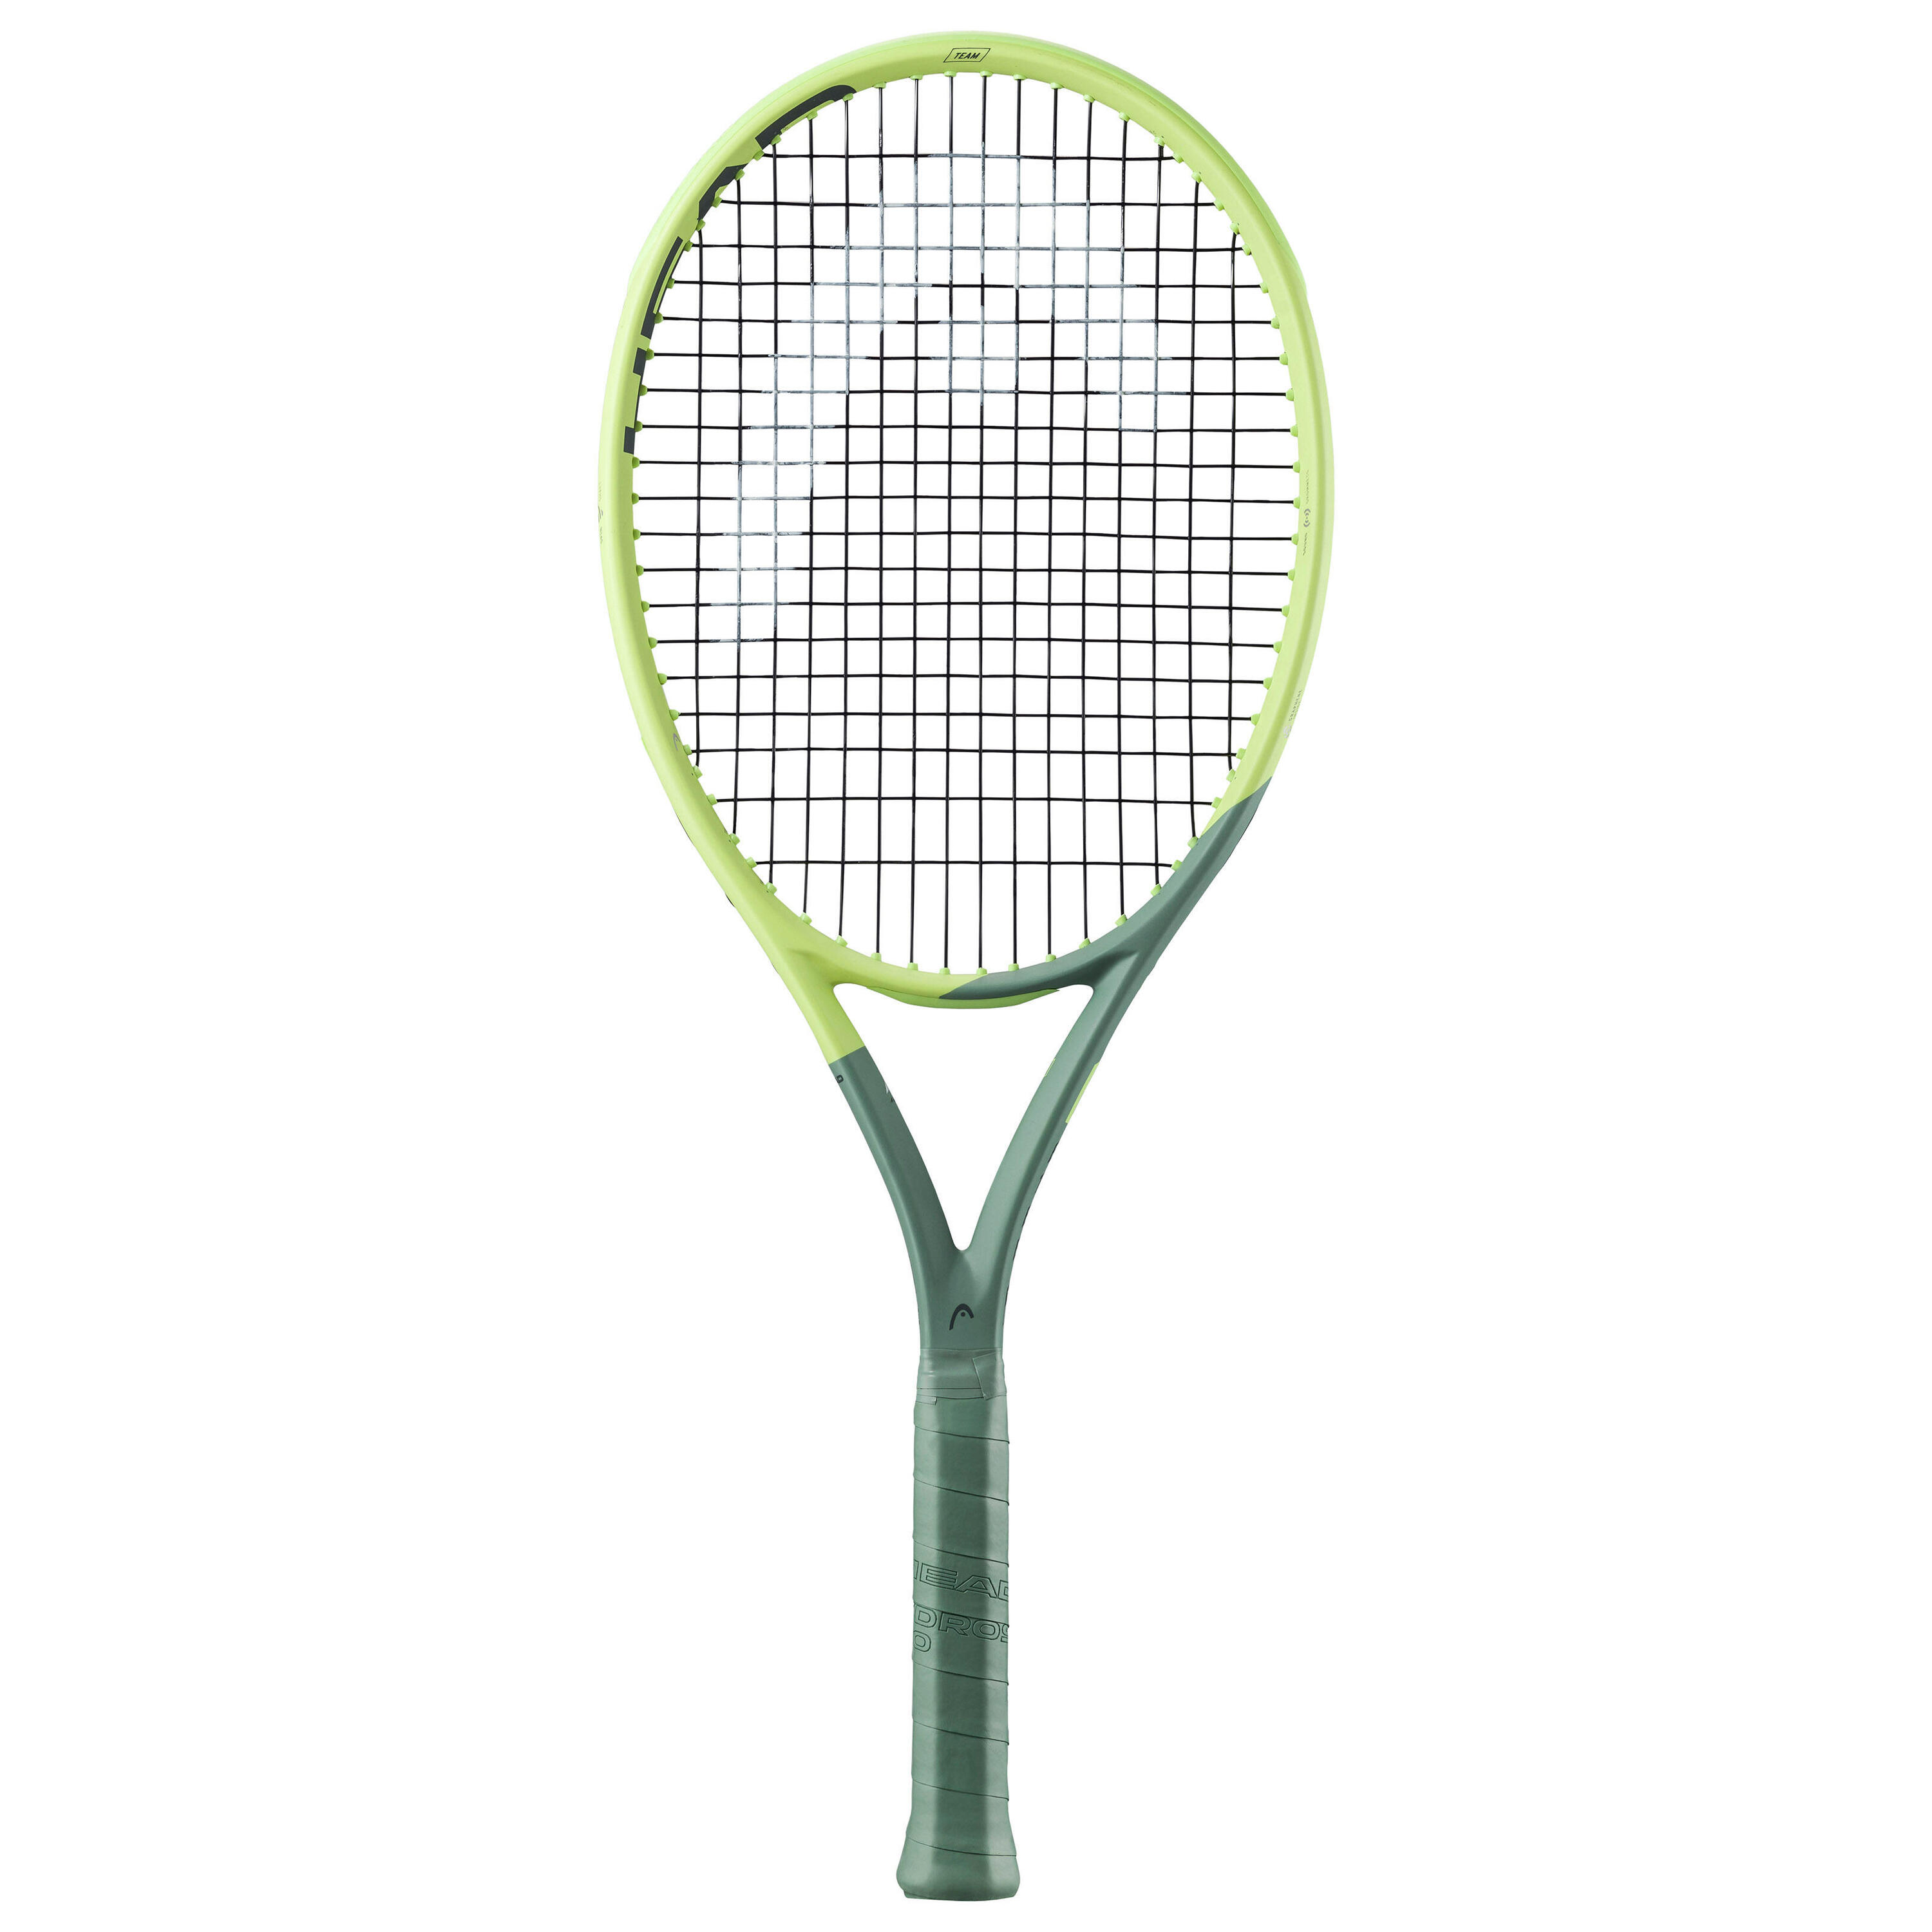 Теннисная ракетка Head - Auxetic Extreme Team Yellow 275 г, зеленый лайм/серо-зеленый клюшка хоккейная с мячом и шайбой 83 см d мяча 7 см